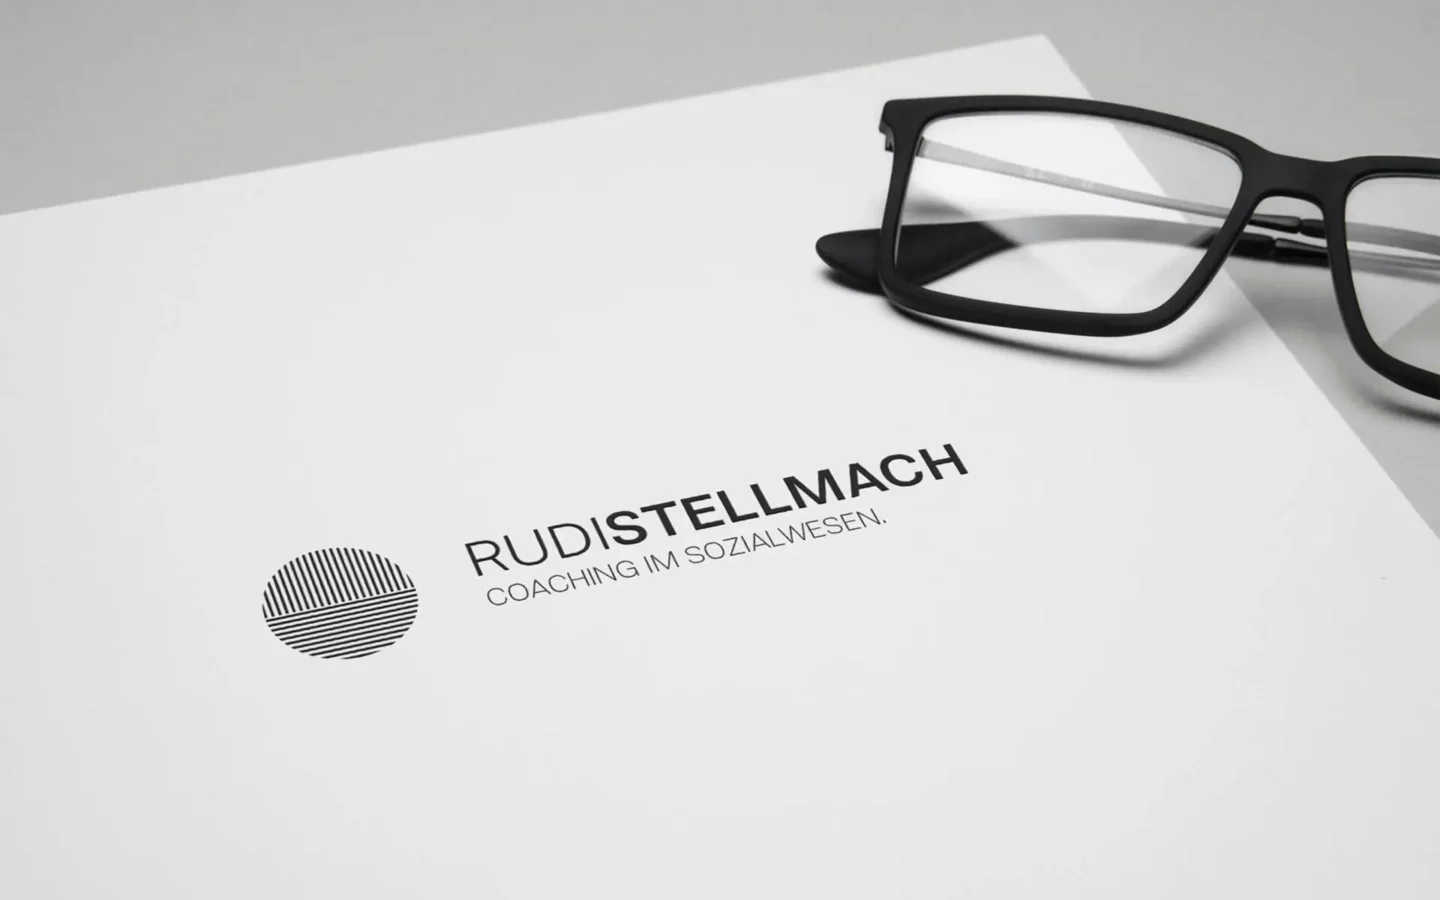 Rudi Stellmach Logodesign